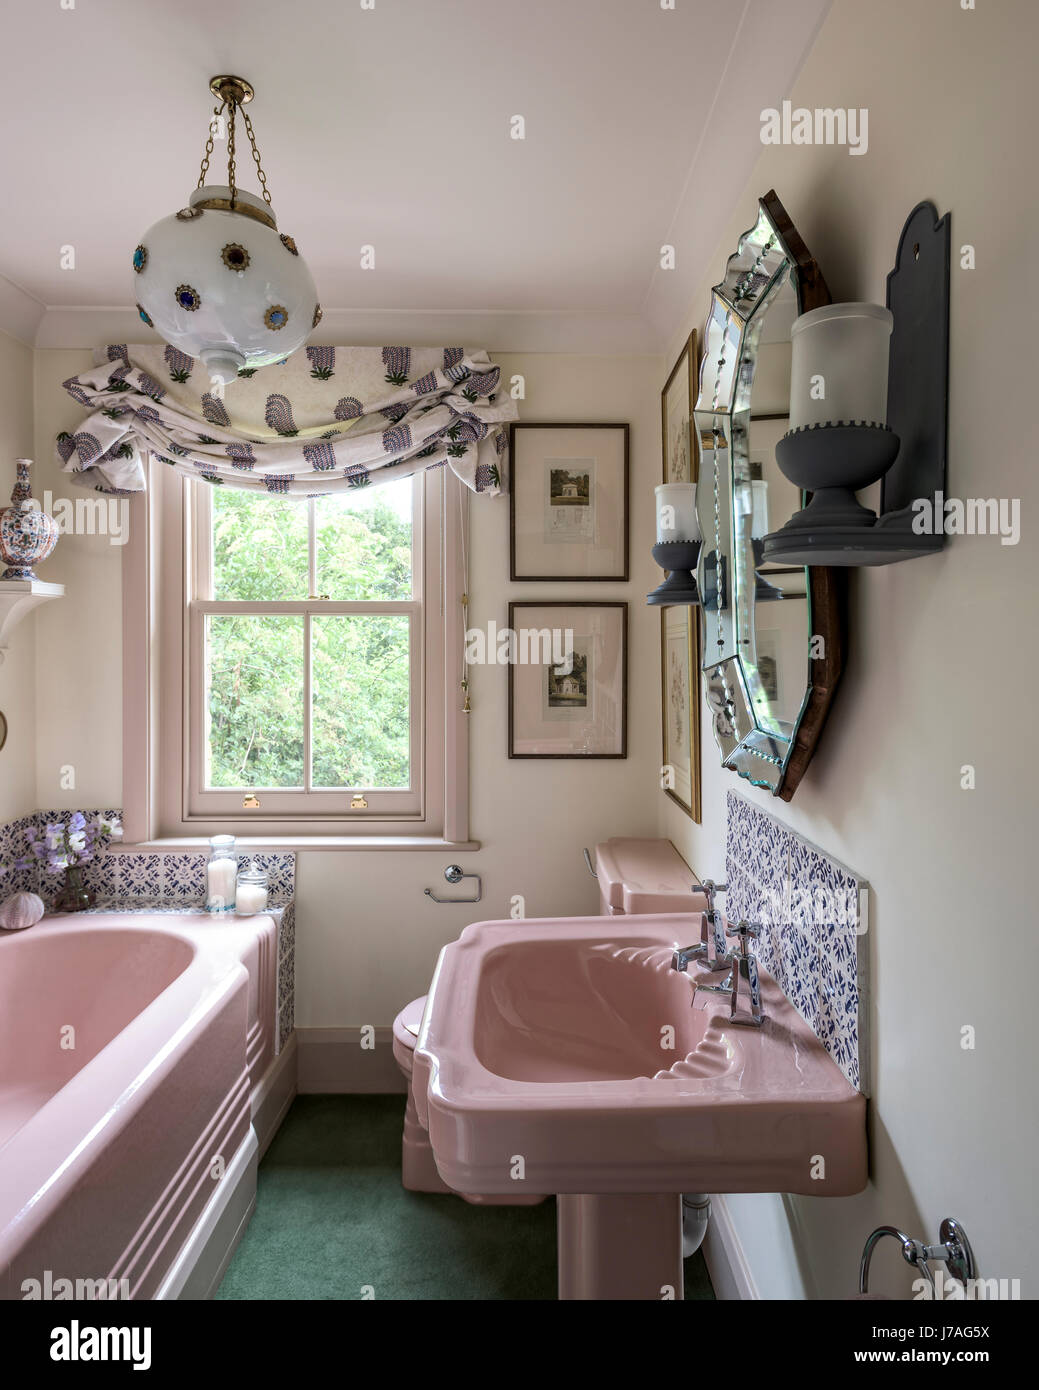 Bañera de hierro fundido esmaltado rosa y el lavabo en el baño con azulejos y ornados dispararon tierra ESPEJO DORADO Foto de stock